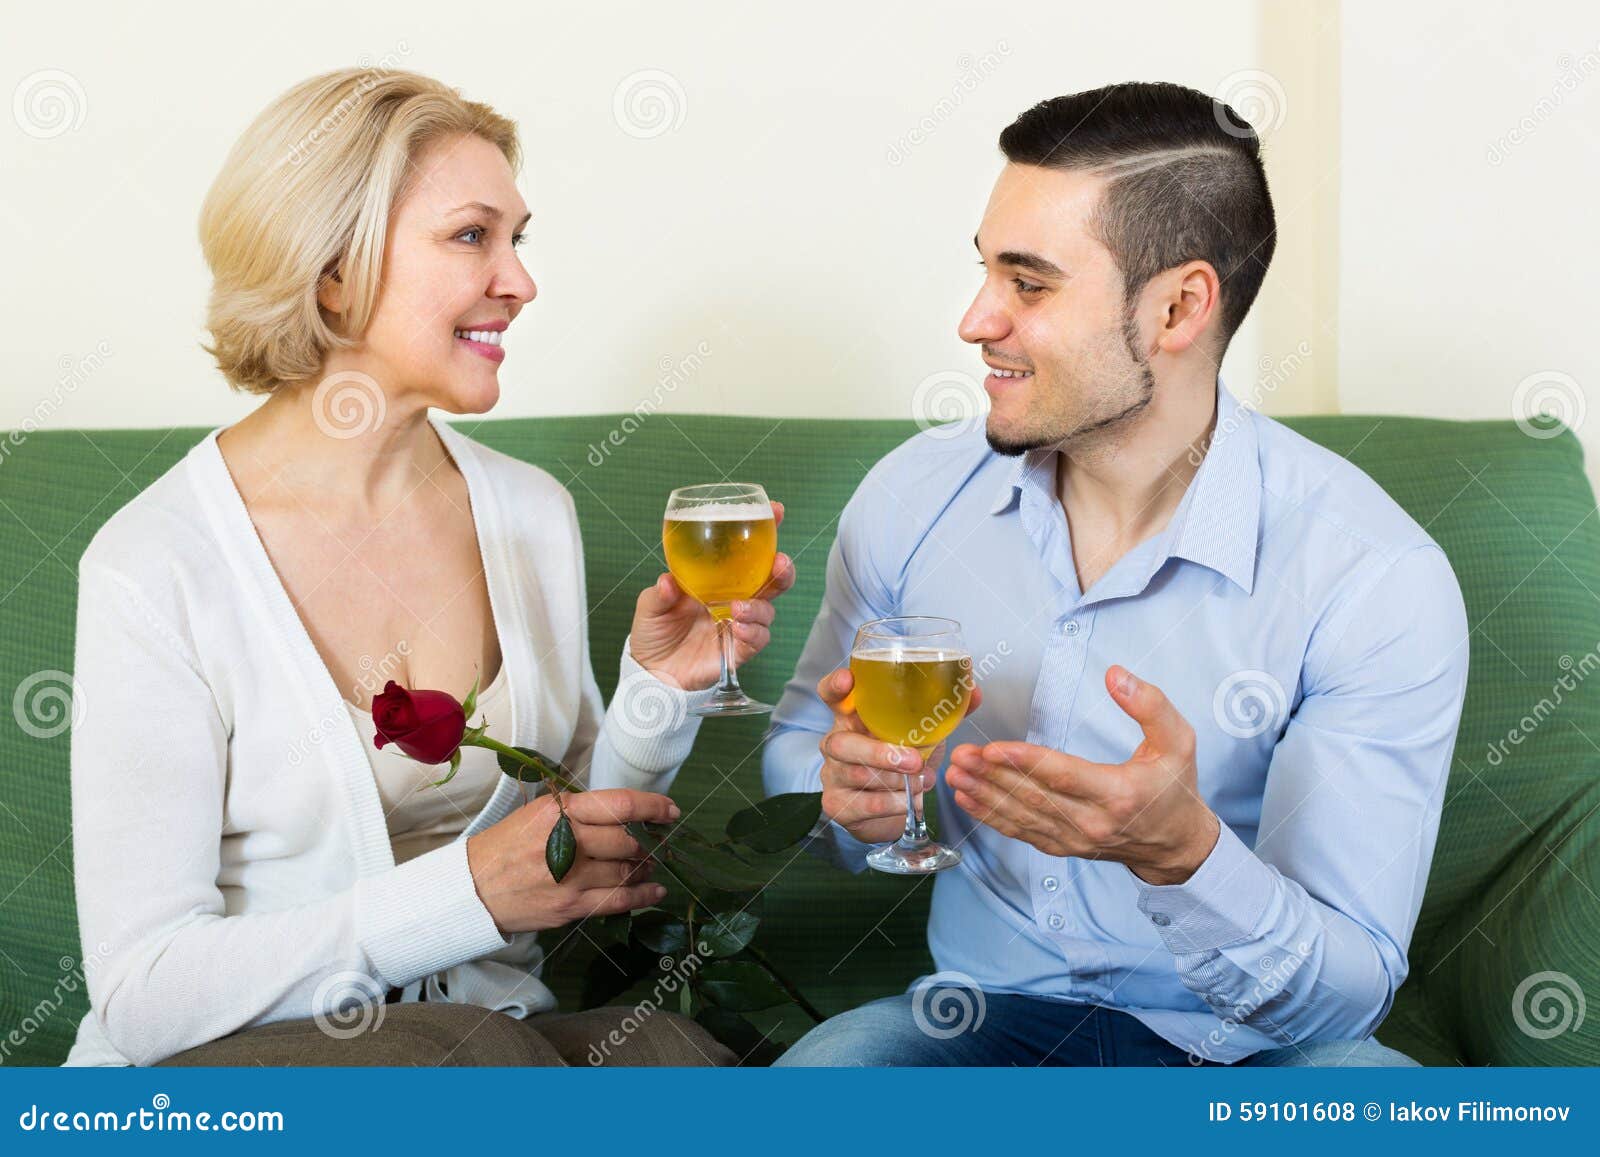 Зрелая с мужем и разговорами. Вино с молодым мужчиной. Выпившие взрослые женщины. Взрослые женщины и молодые парни. Взрослые женщины выпивают с молодыми.